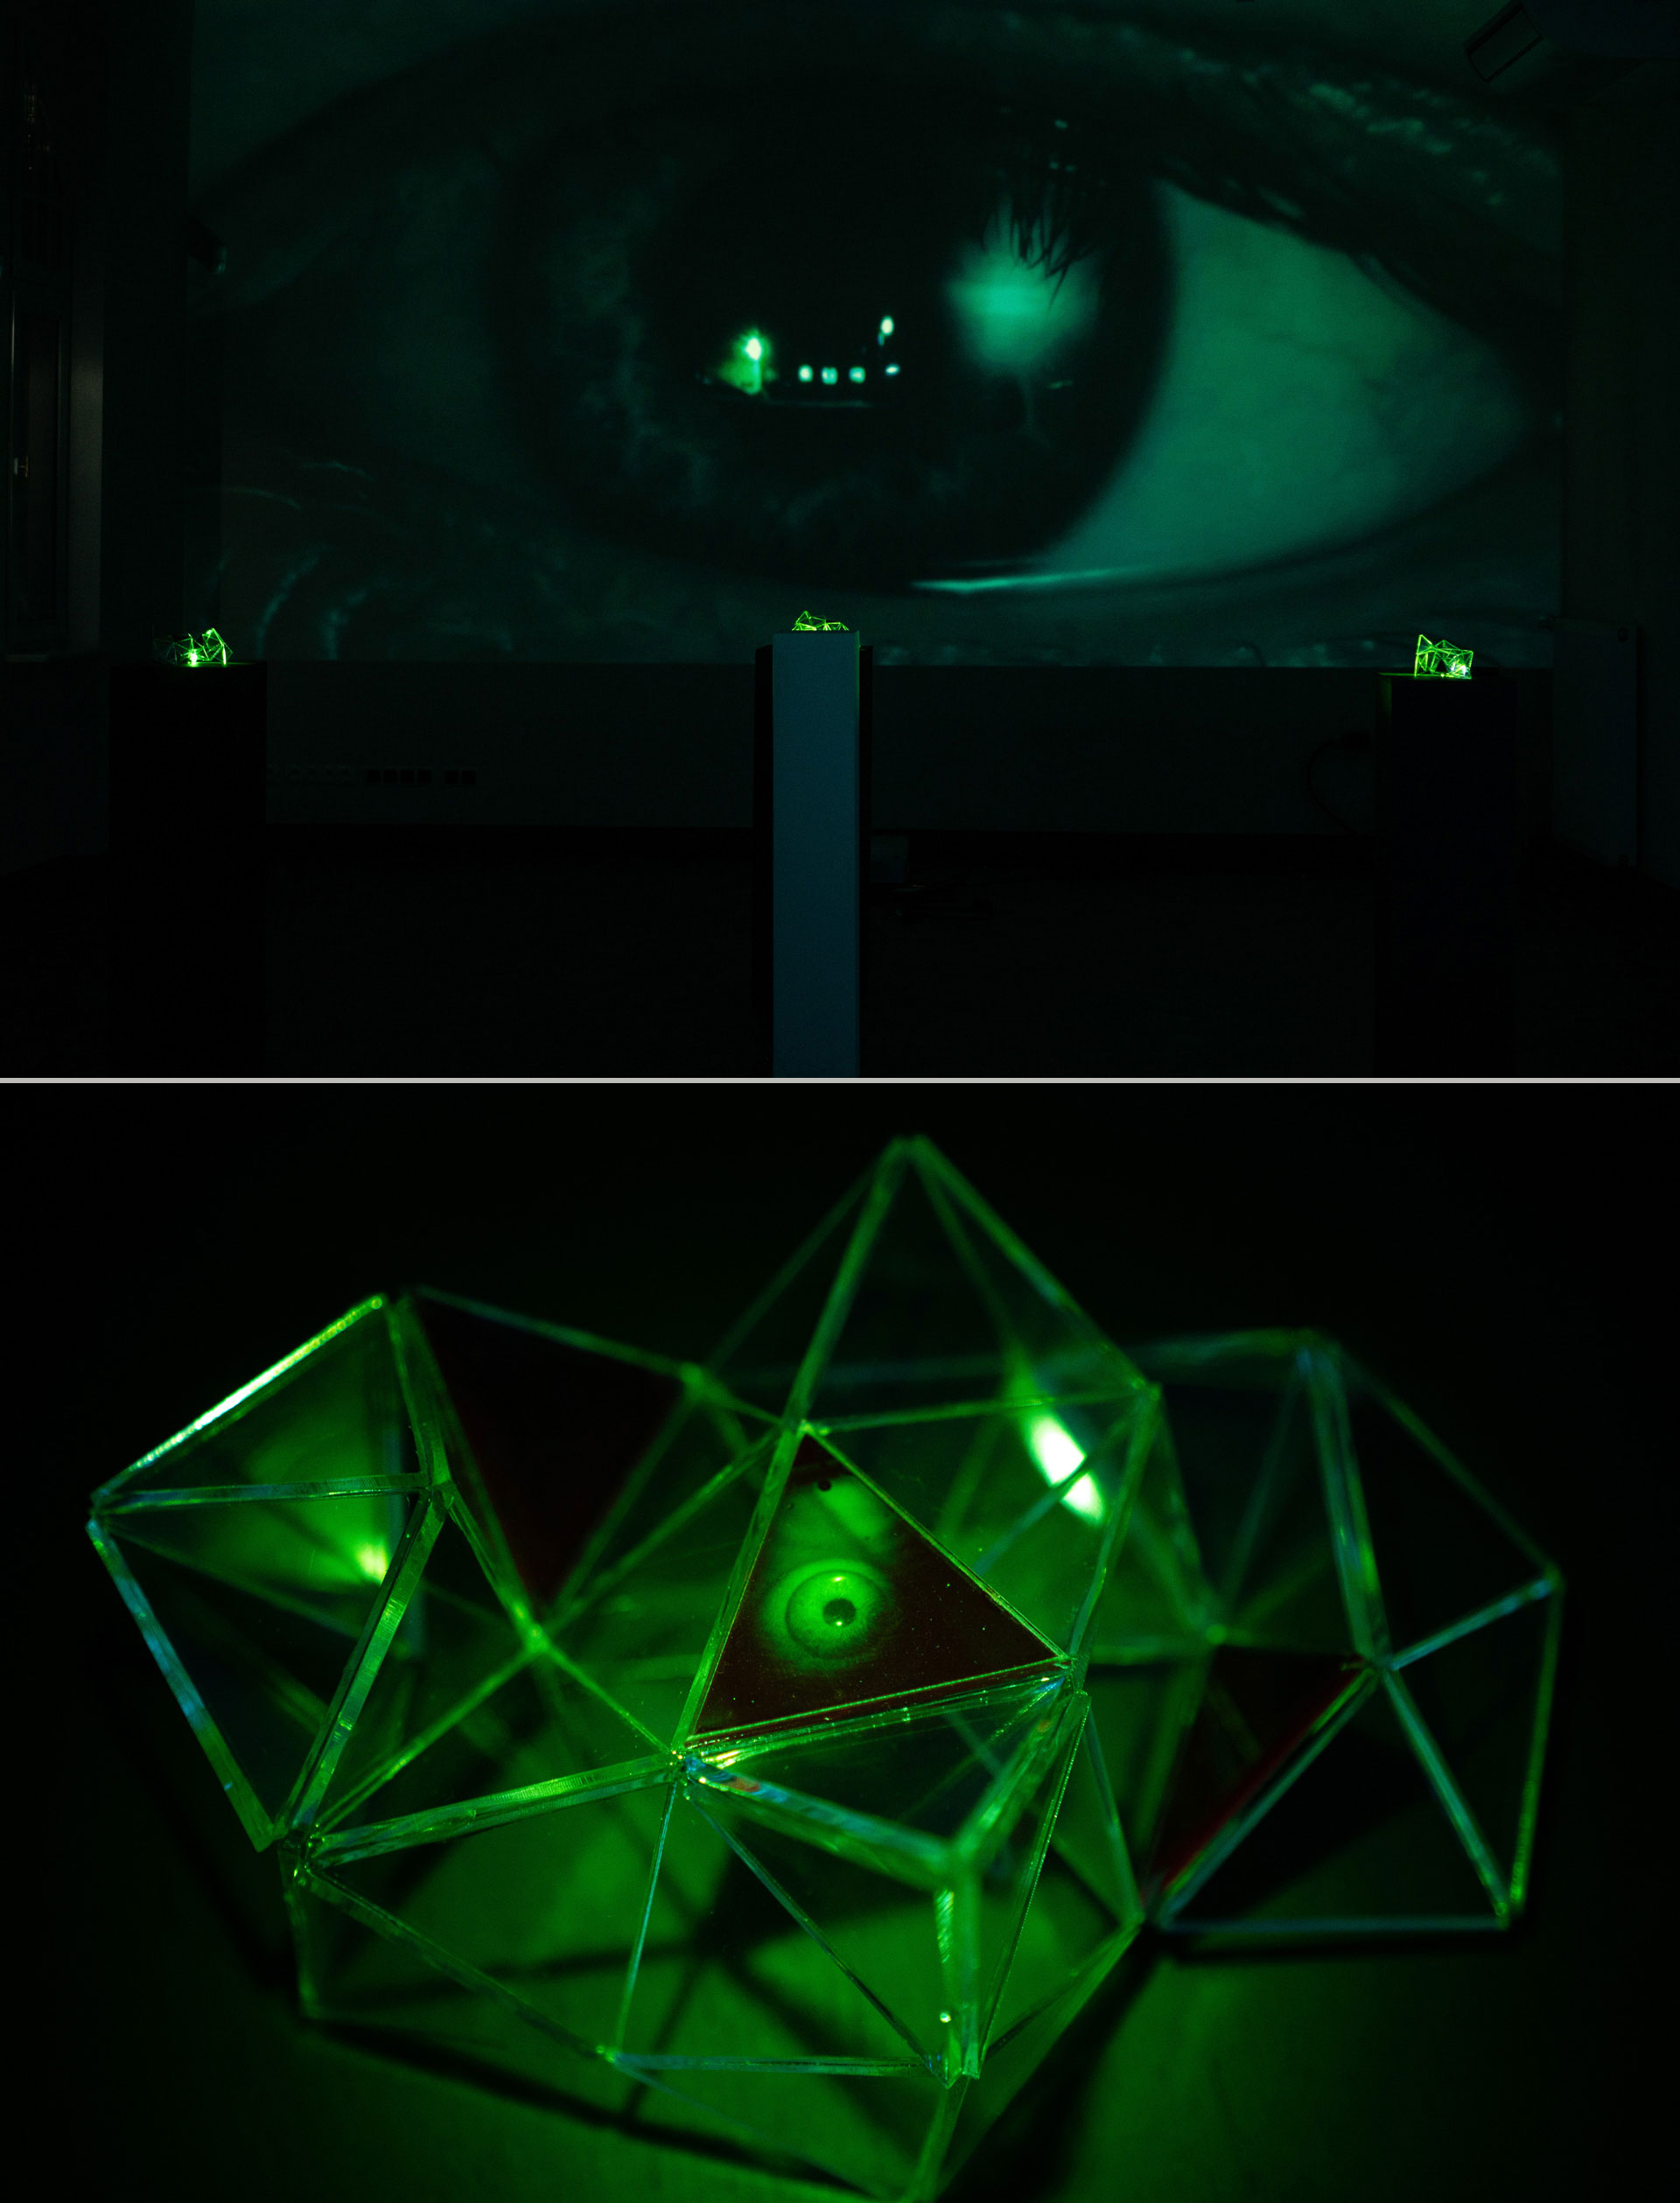 Dwa zielono-czarne zdjęcia. Na dolnym małe trójkąty posklejane ze sobą na krawędziach, na niektórych z nich są umieszczone hologramy przedstawiające oko. Górne zdjęcie: ludzkie oko w powiększeniu, pod nim prostokątny, ciemny kształt